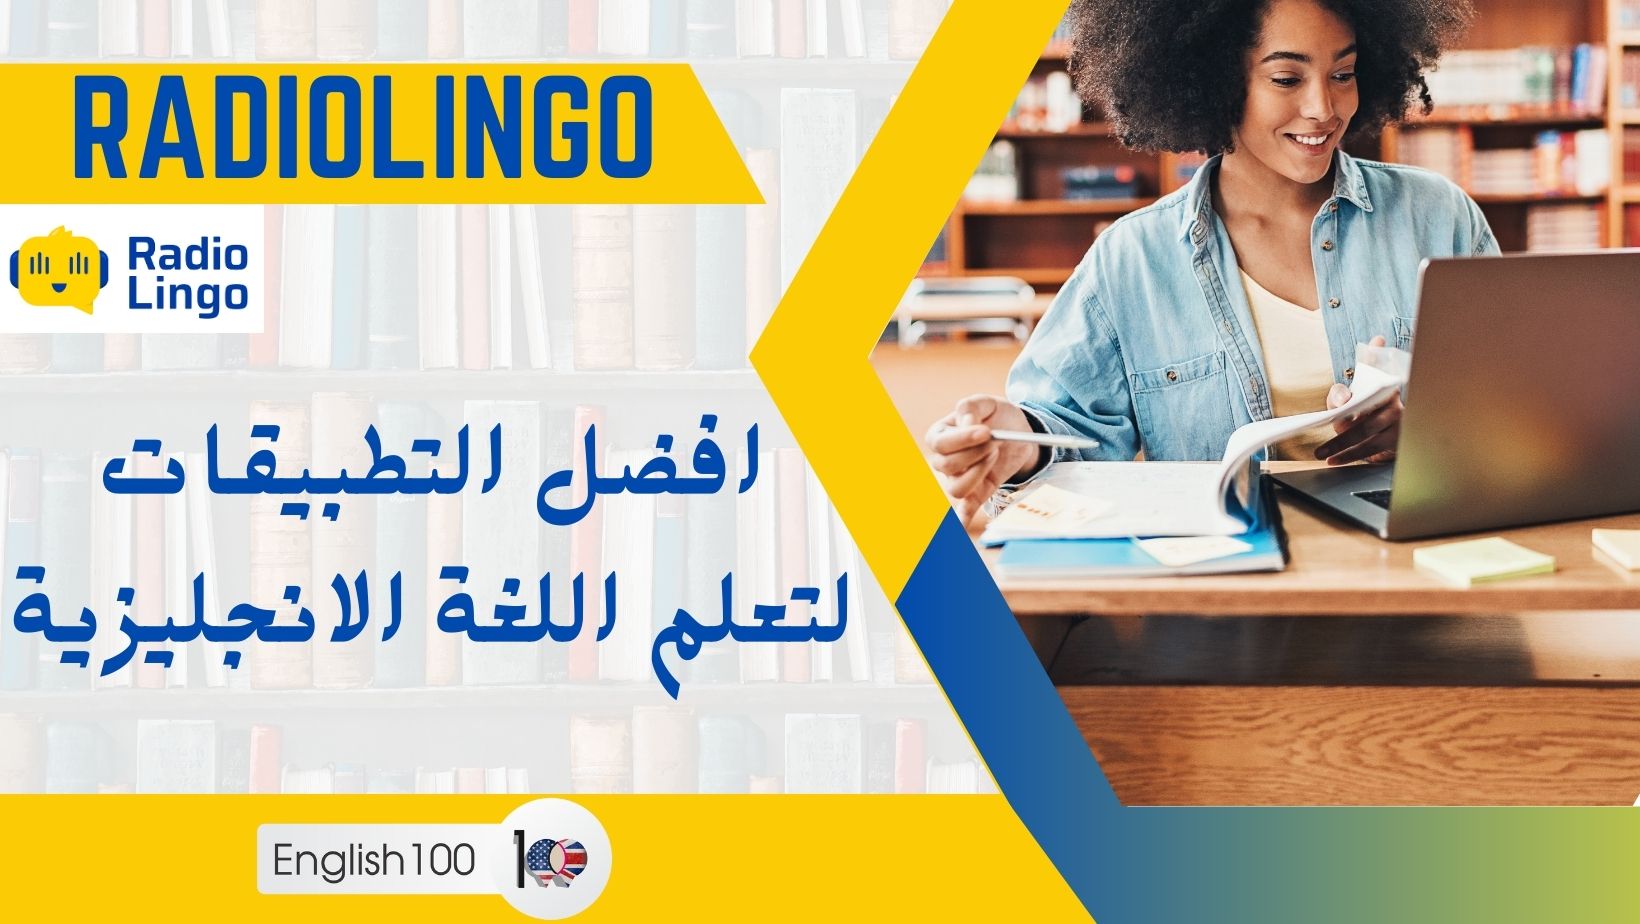 راديولينغو: افضل التطبيقات لتعلم اللغة الانجليزية